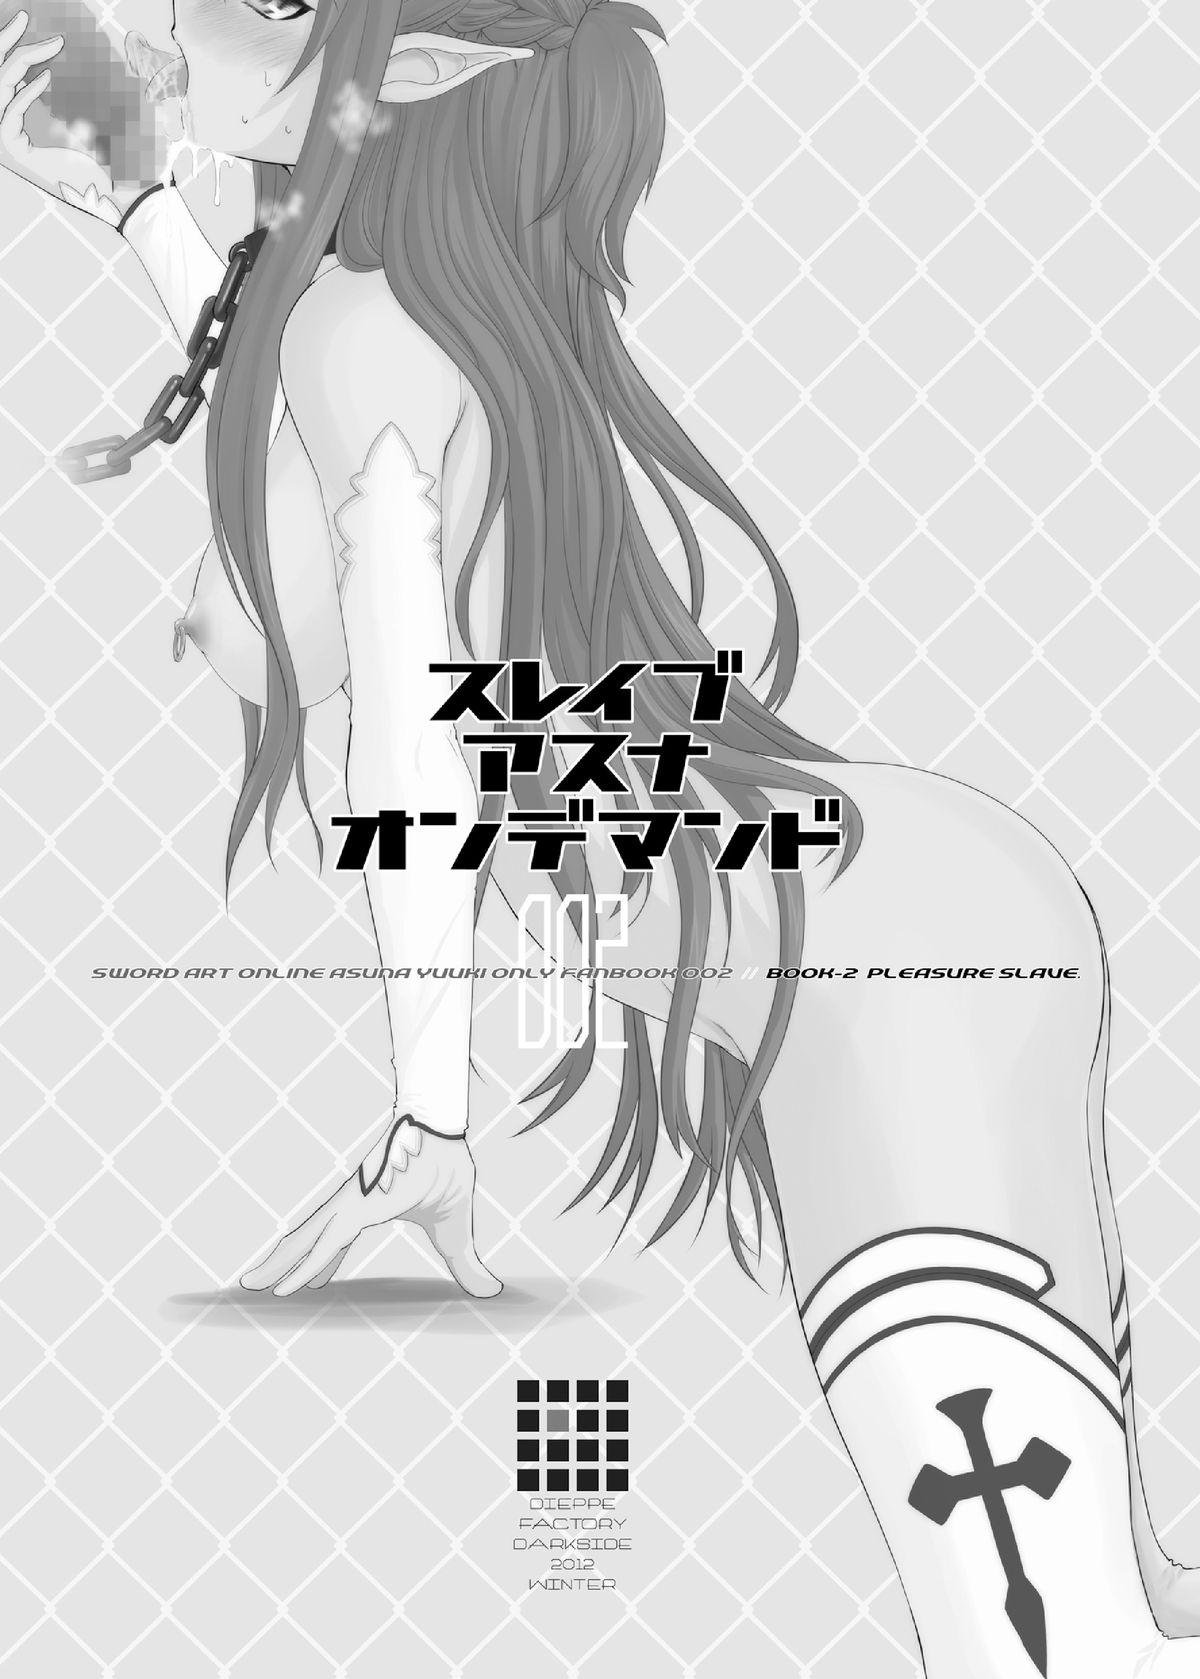 Asuna masturbation images